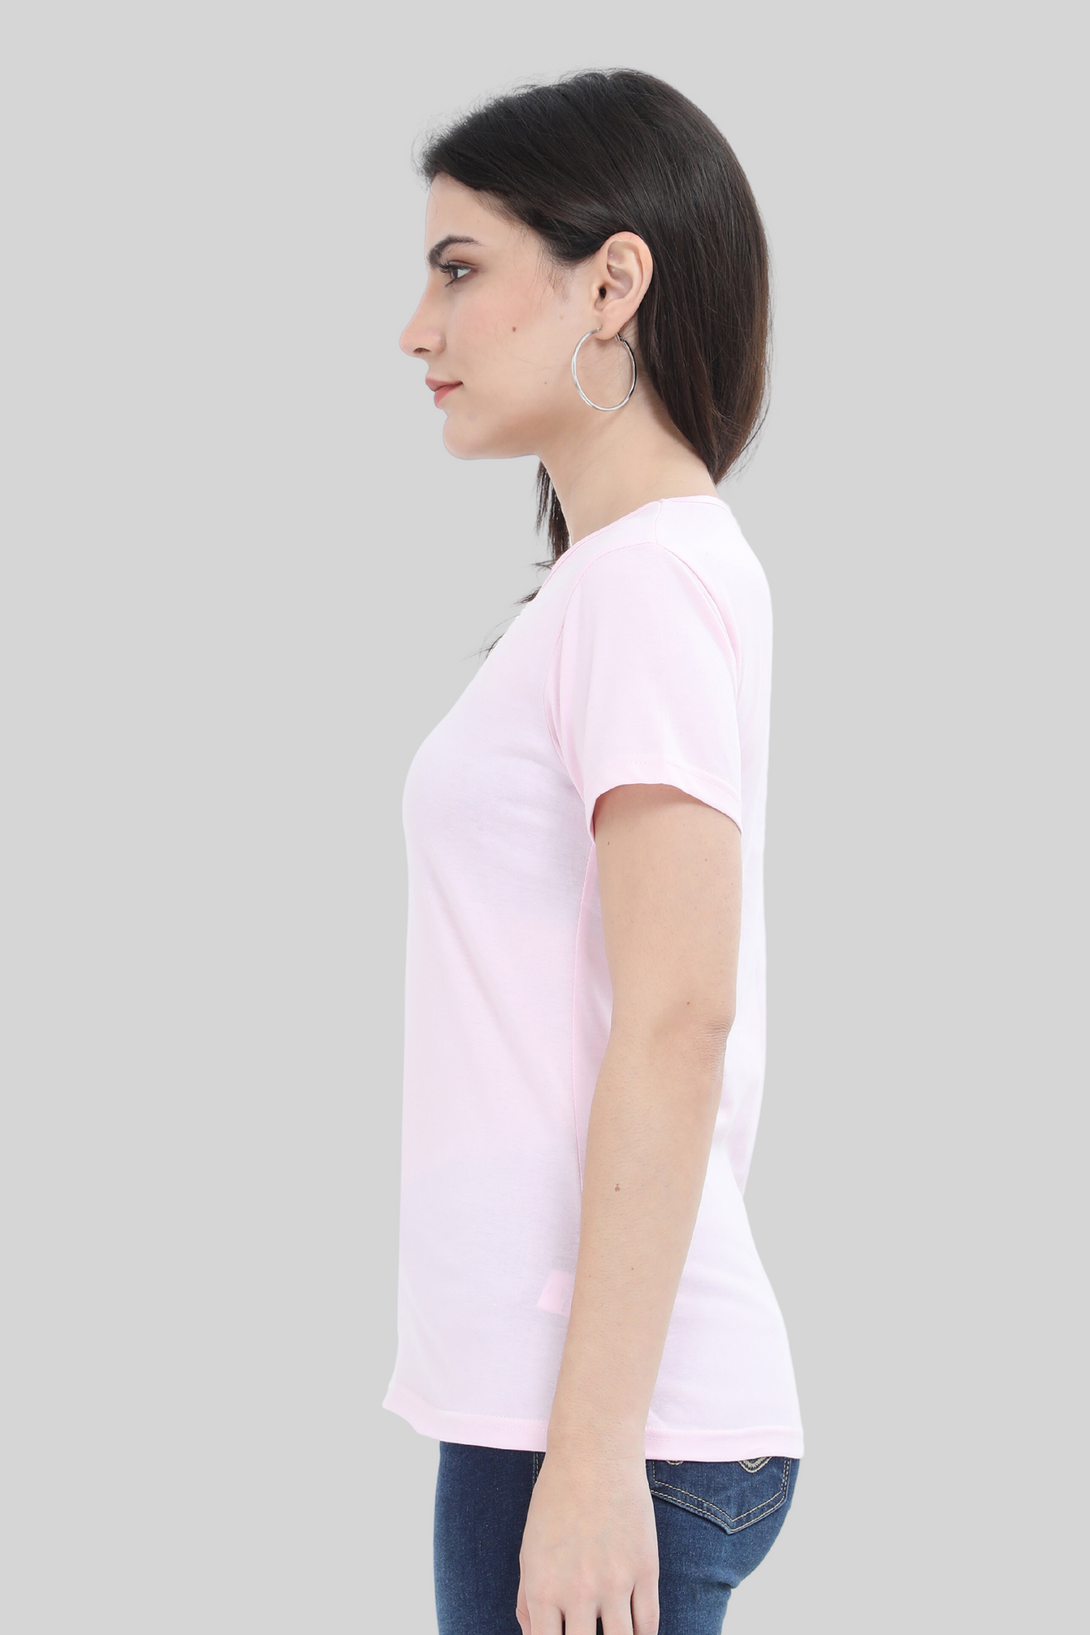 Light Pink Scoop Neck T-Shirt For Women - WowWaves - 3